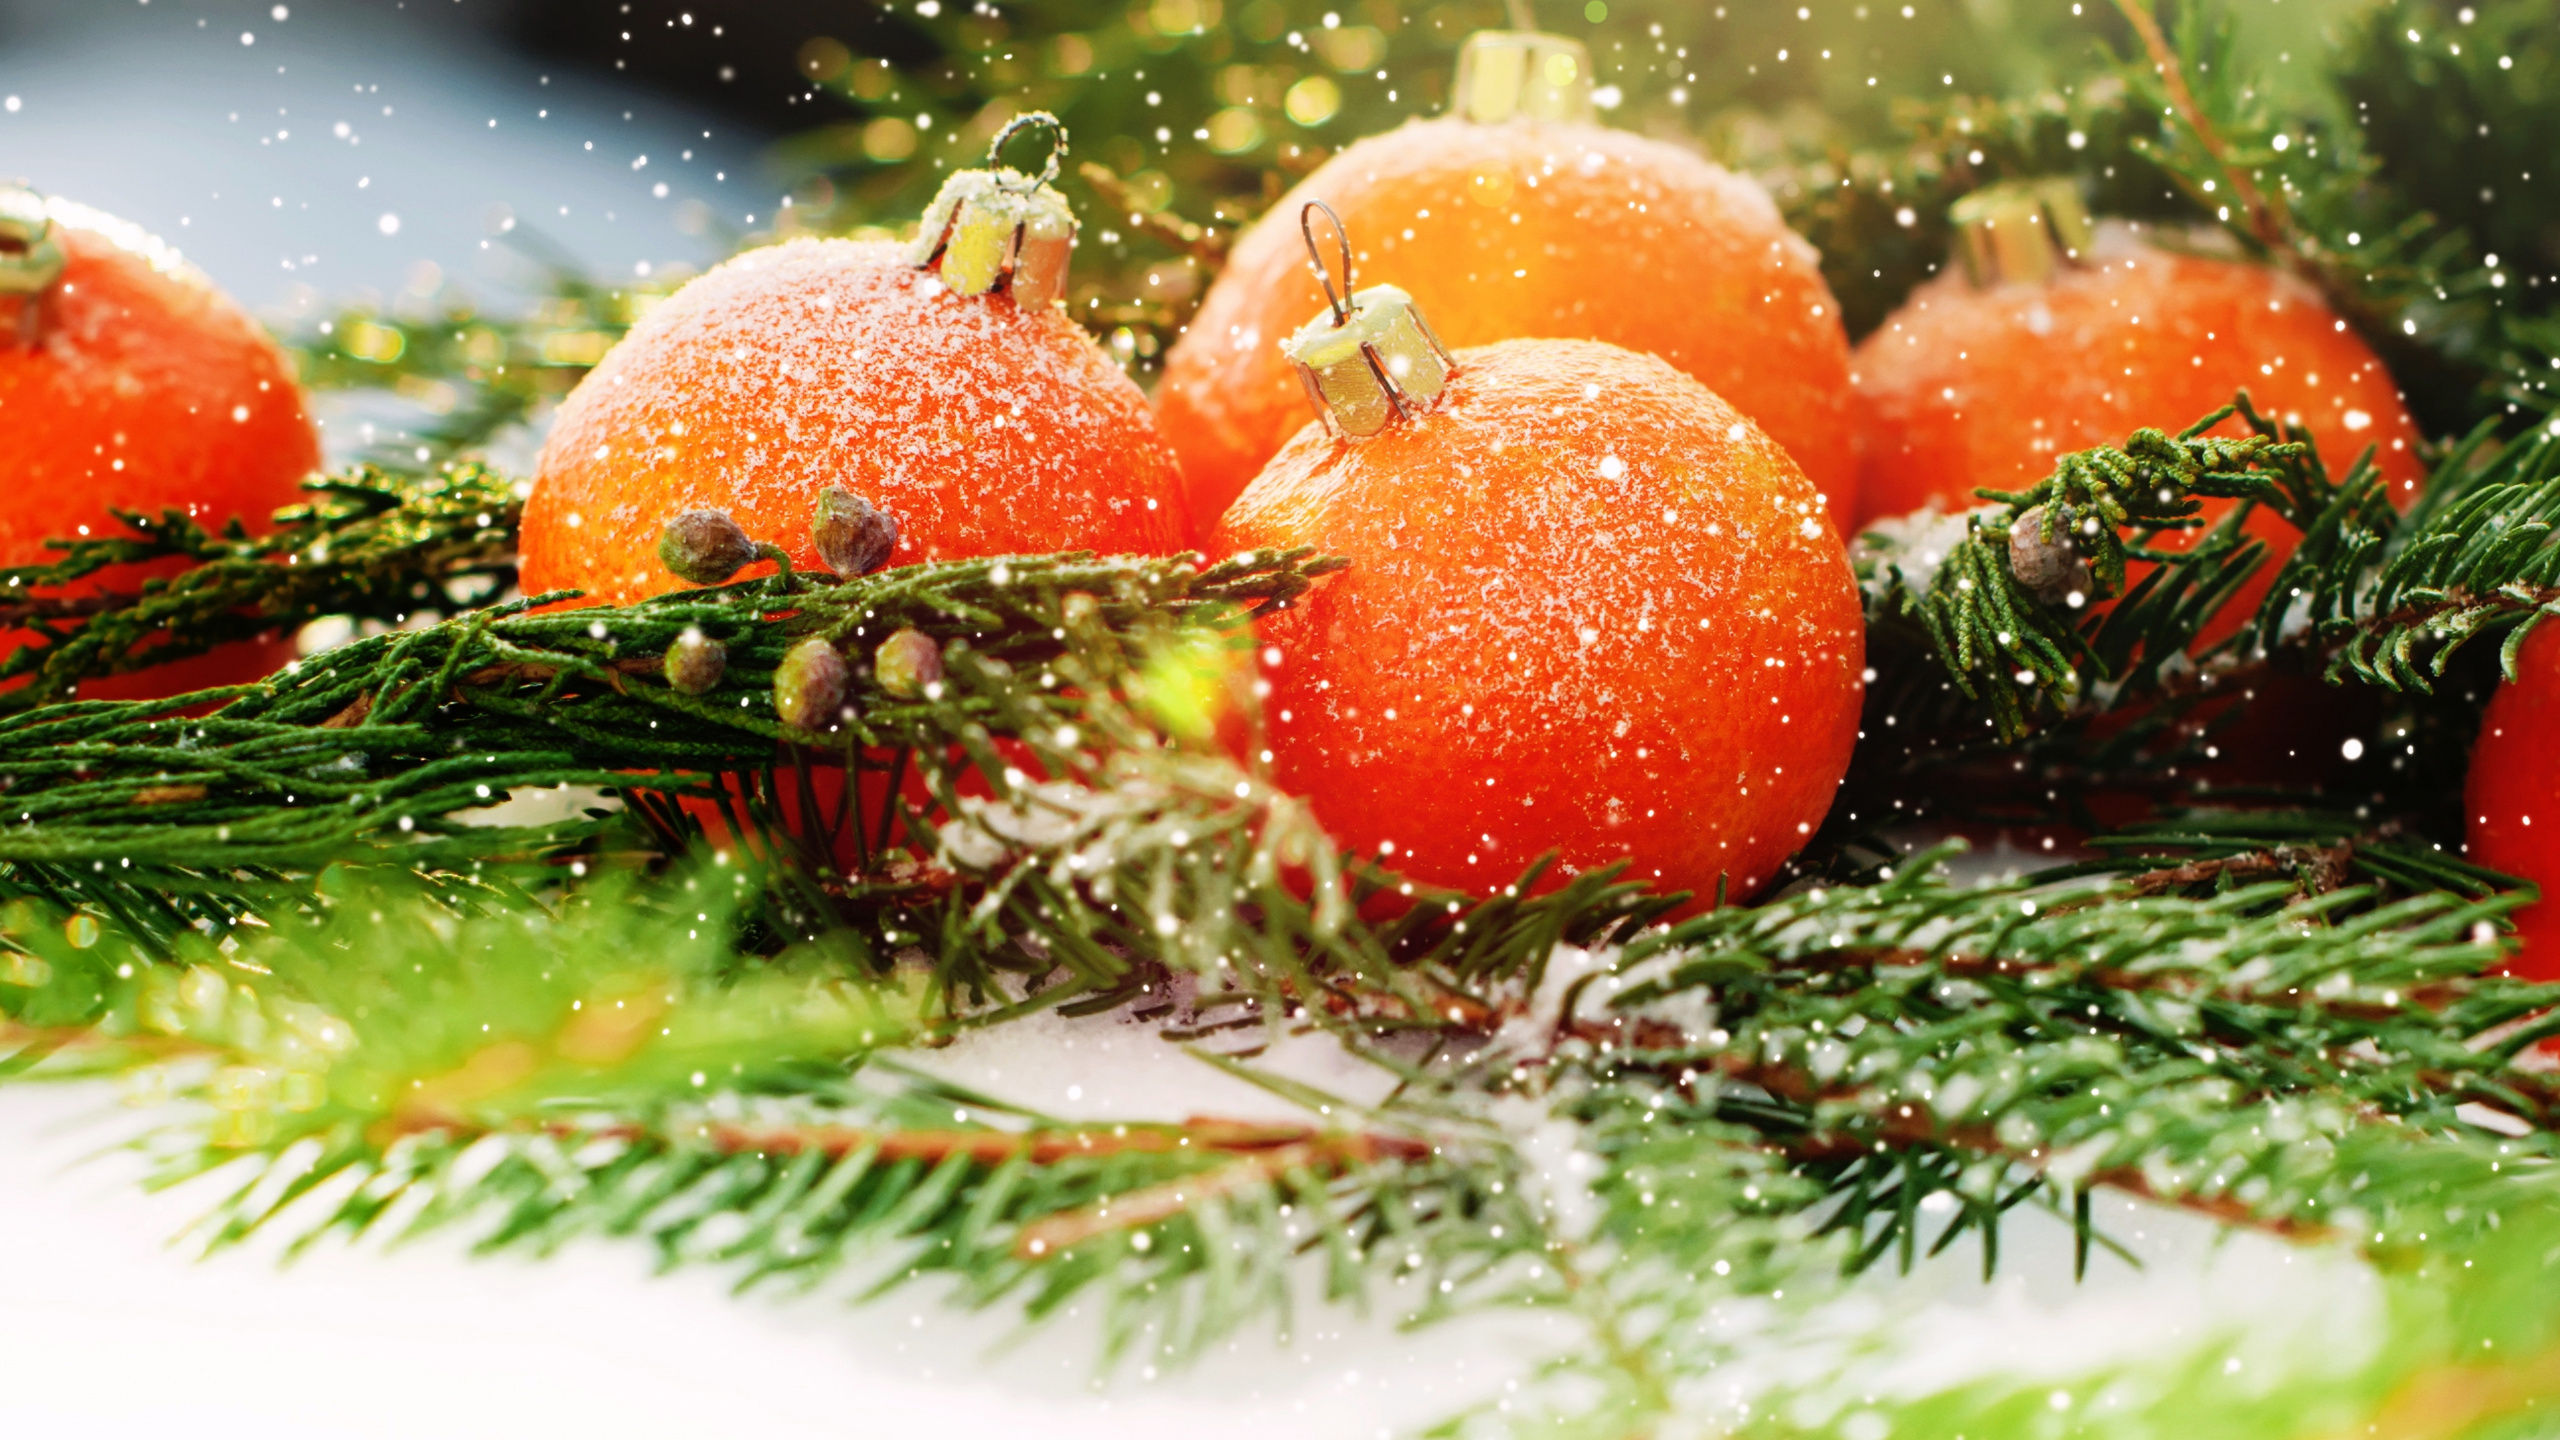 Le Jour De Noël, Nouvelle Année, la Nourriture Végétarienne, Aliment, Fruits. Wallpaper in 2560x1440 Resolution